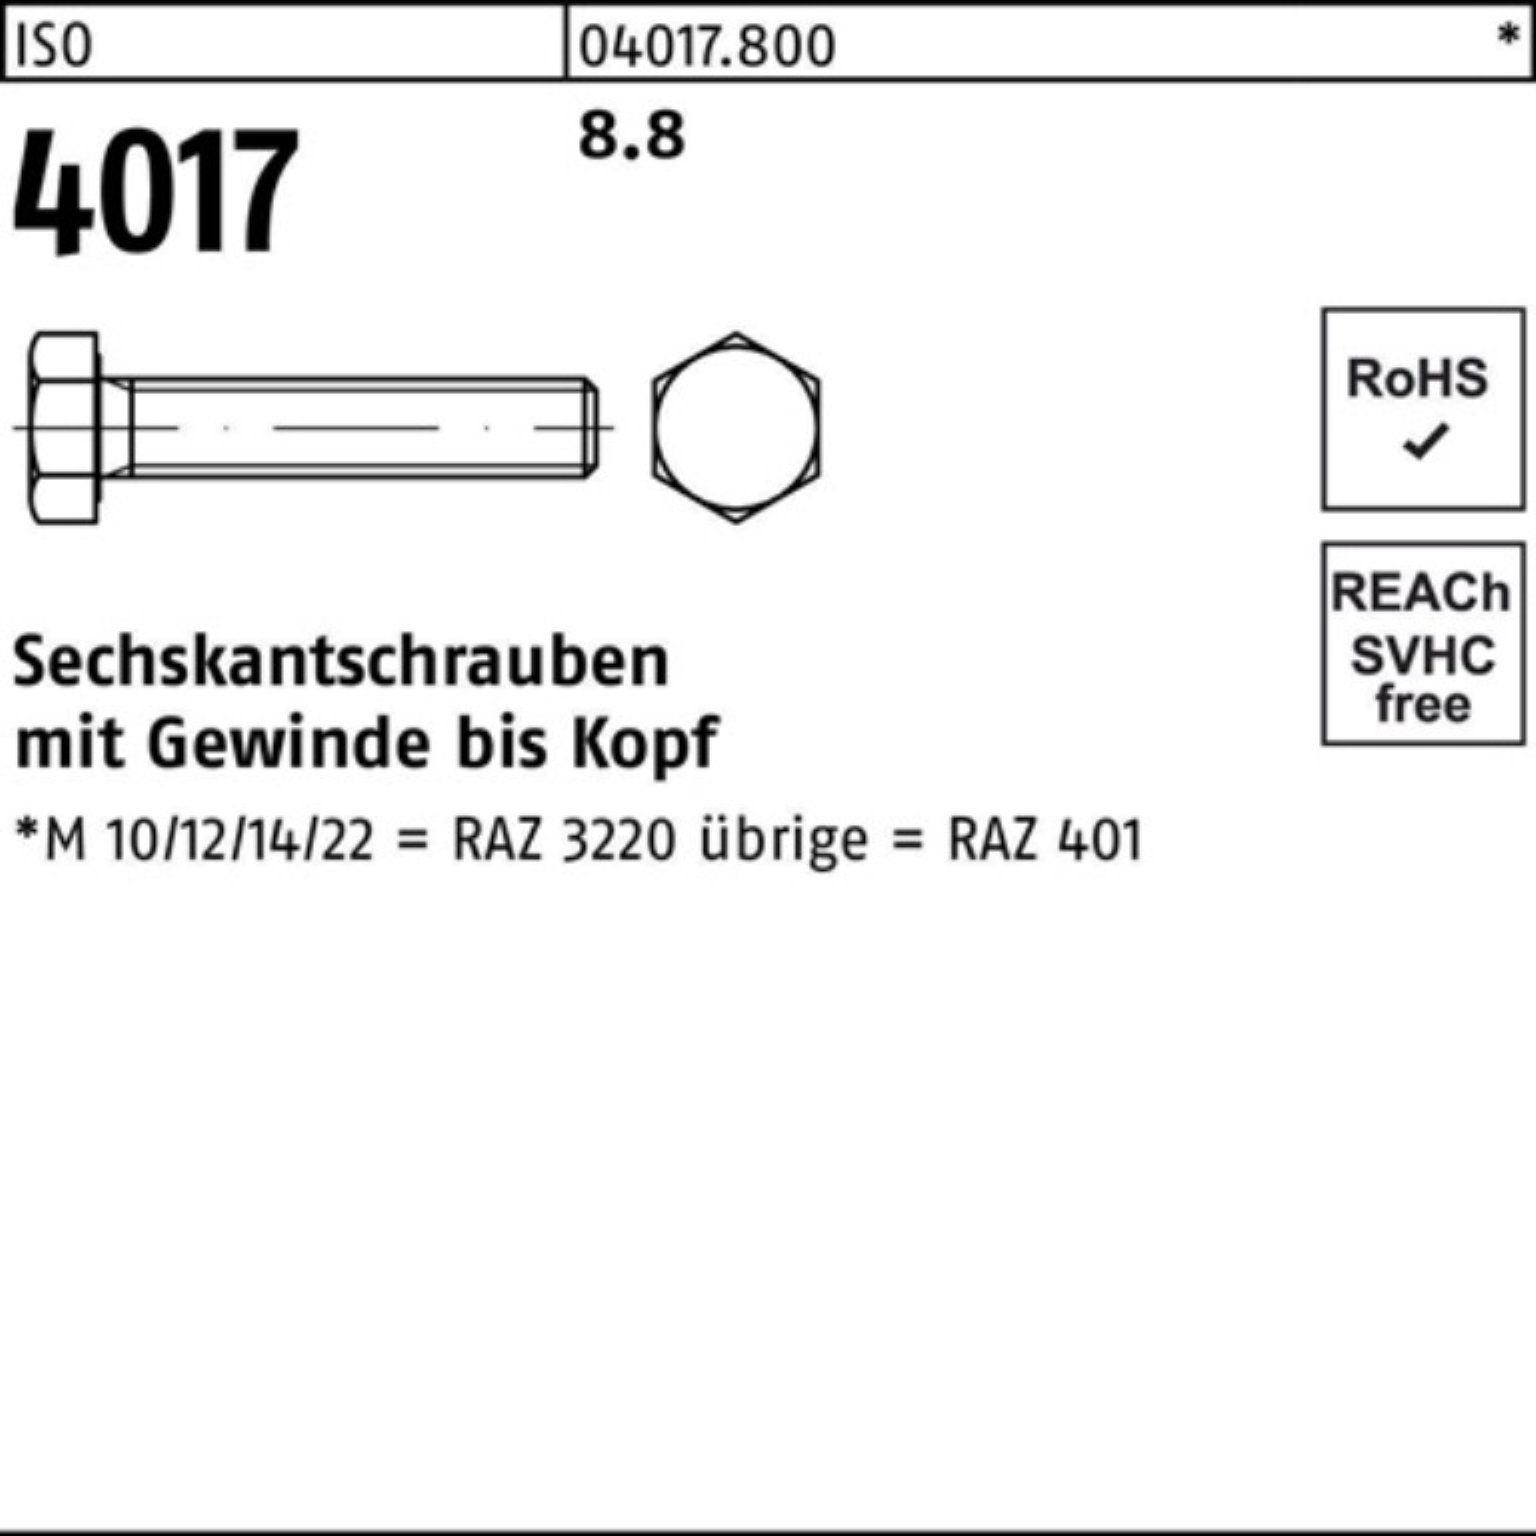 Bufab Sechskantschraube 100er Pack Sechskantschraube M36x 4017 8.8 140 Stück 401 VG ISO ISO 1